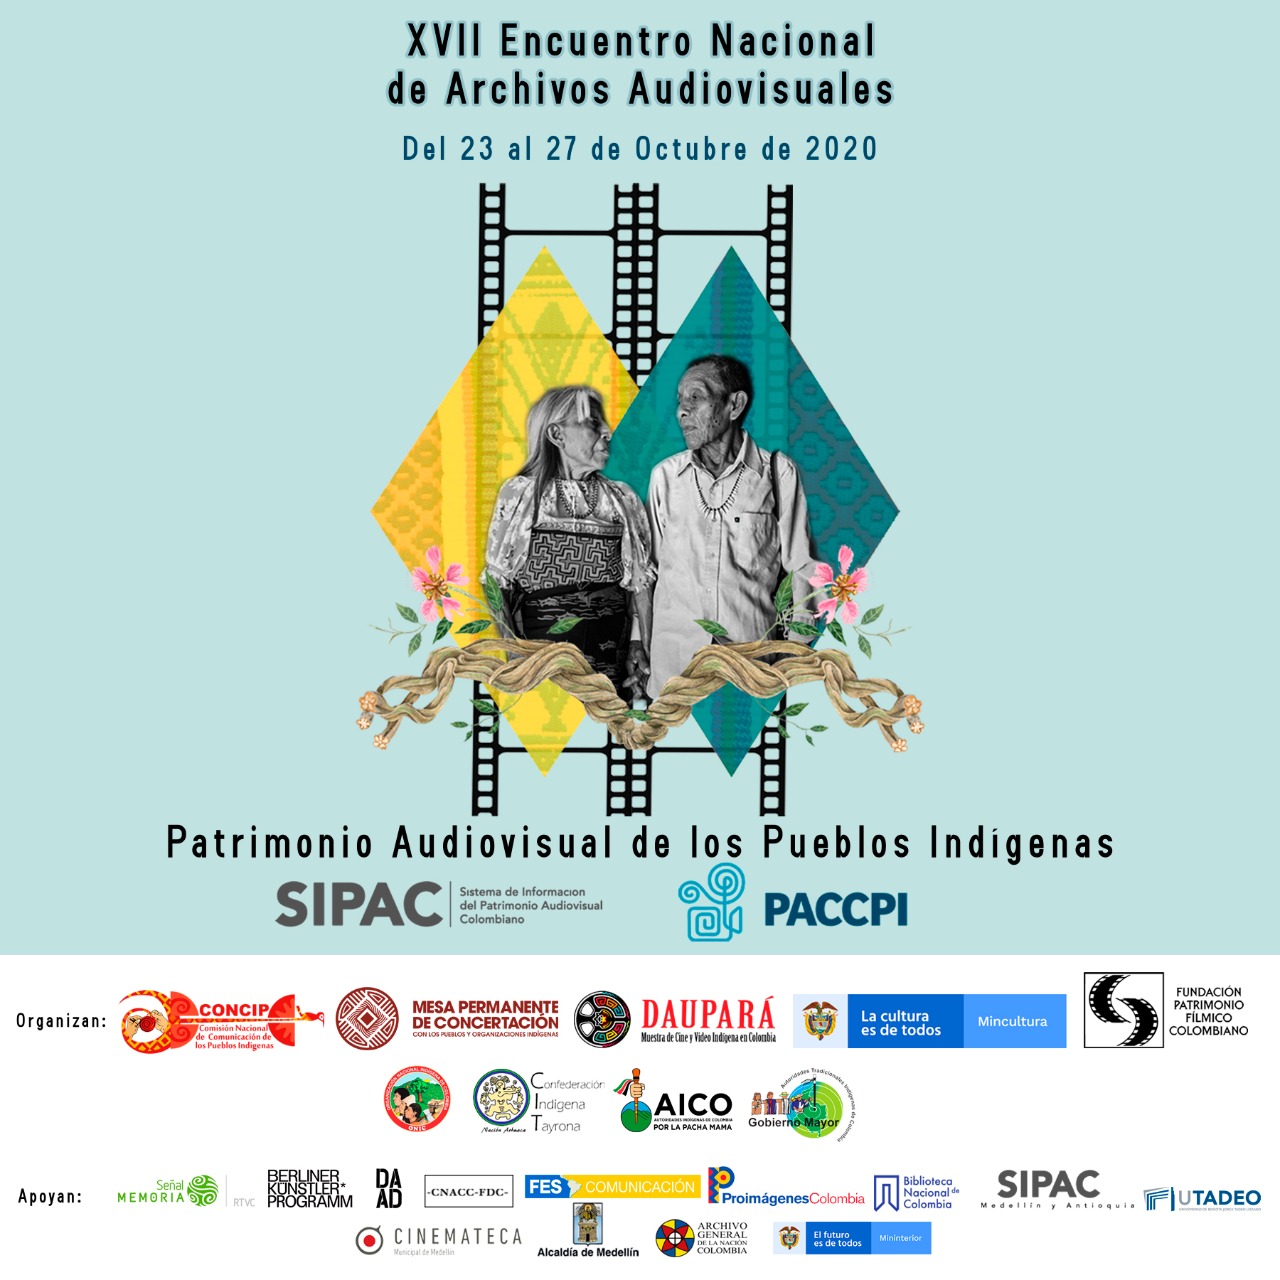 XVII Encuentro Nacional de Archivos Audiovisuales del Sistema de Información del Patrimonio Audiovisual Colombiano - SIPAC-